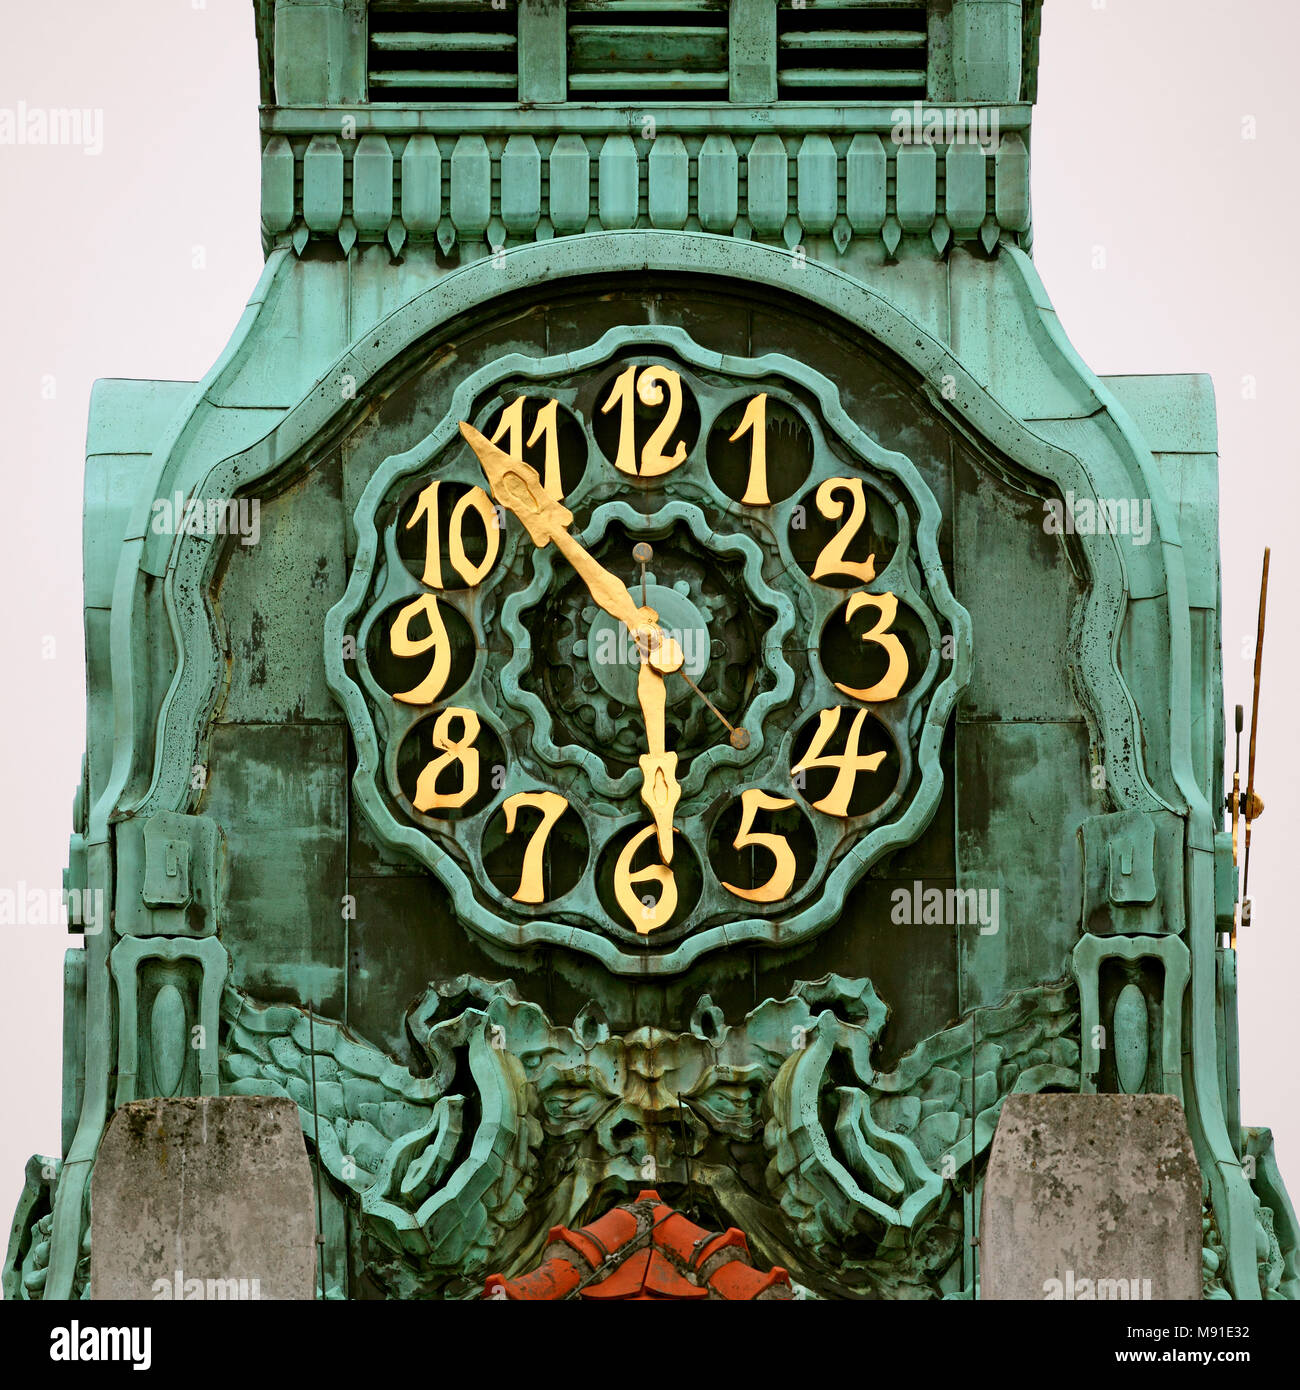 Clock at Sprudelhof, Bad Nauheim, Germany Stock Photo